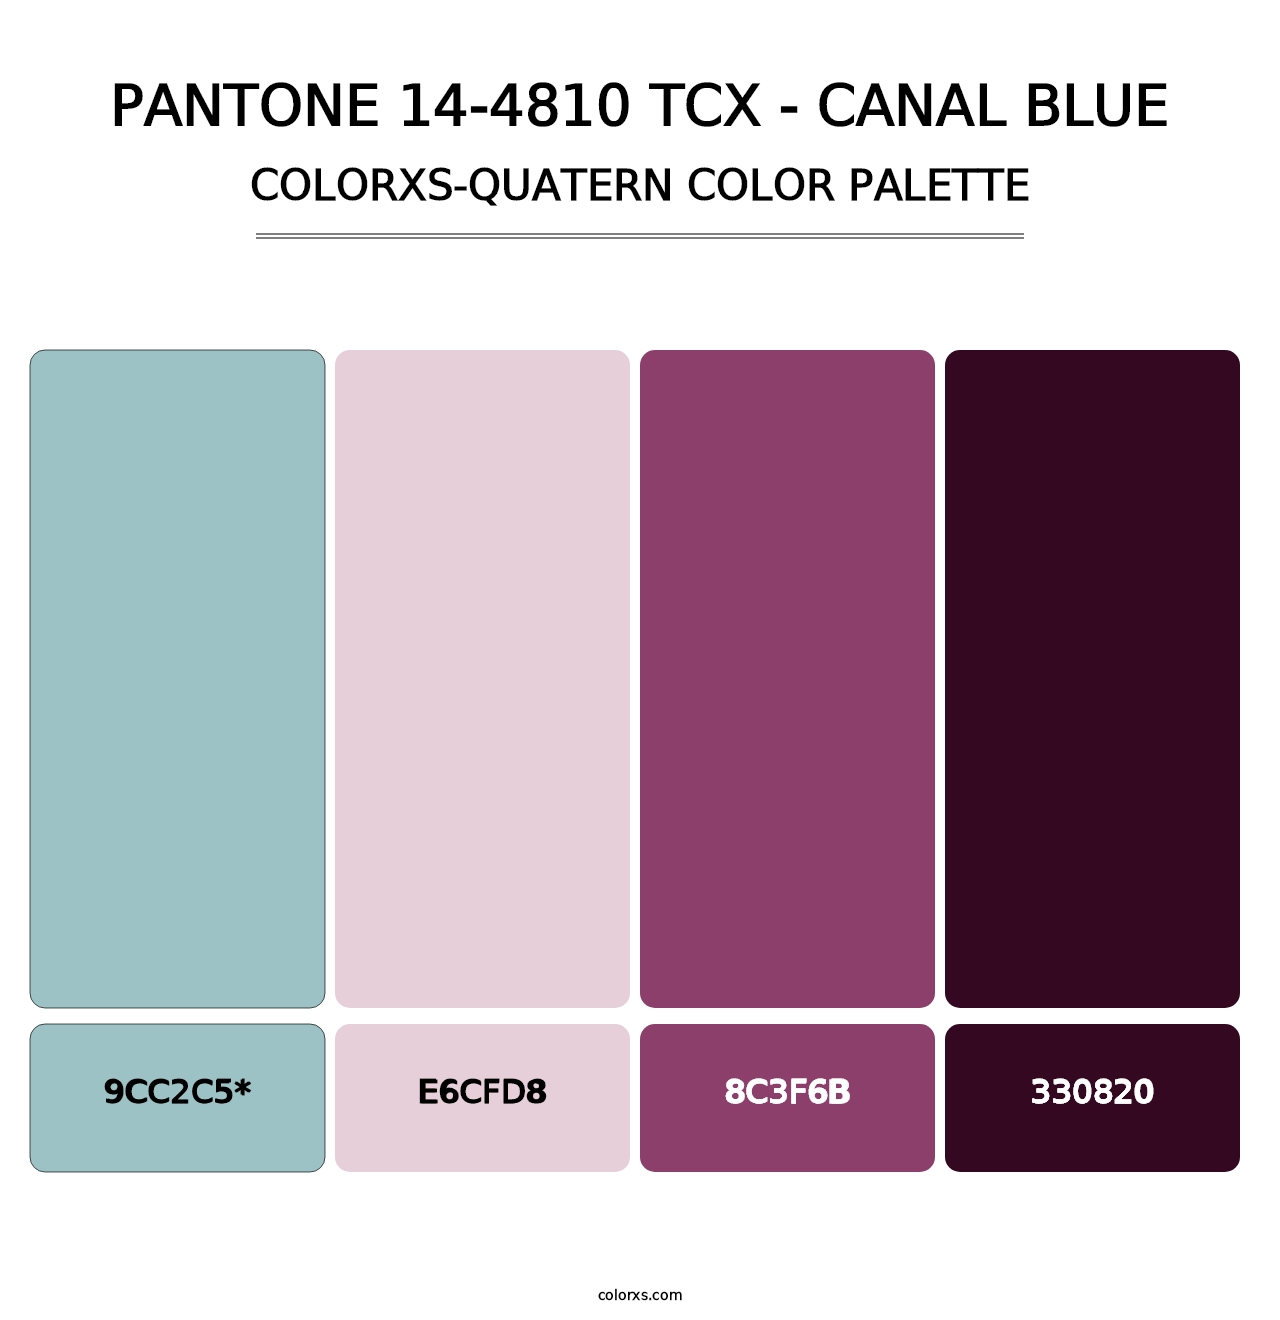 PANTONE 14-4810 TCX - Canal Blue - Colorxs Quatern Palette